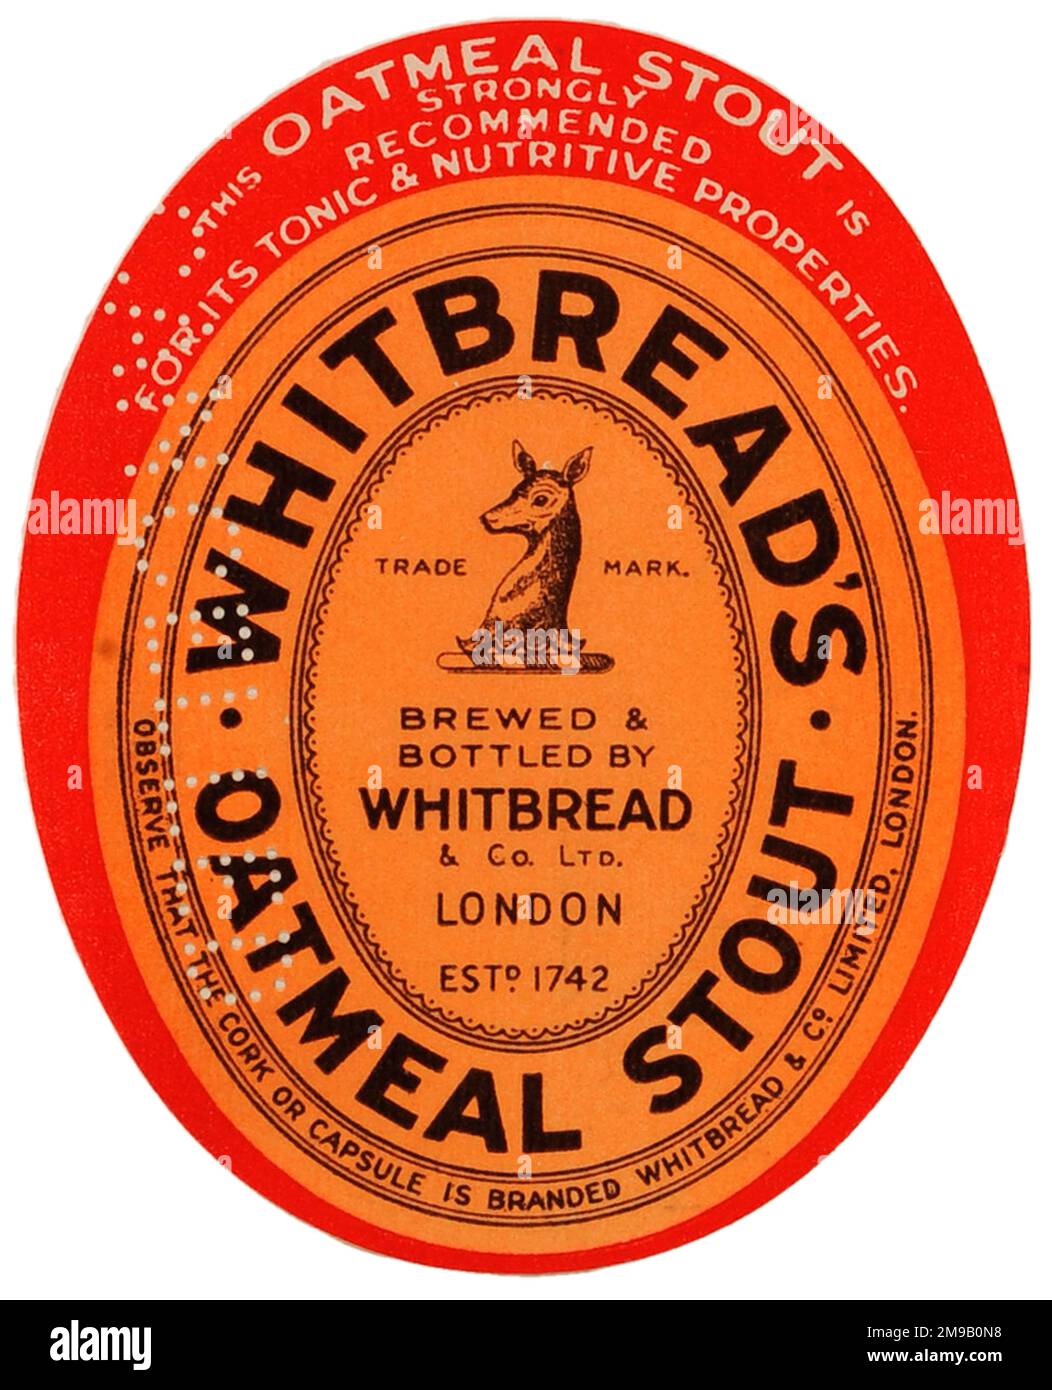 Whitbread's Oatmeal Stout Stock Photo